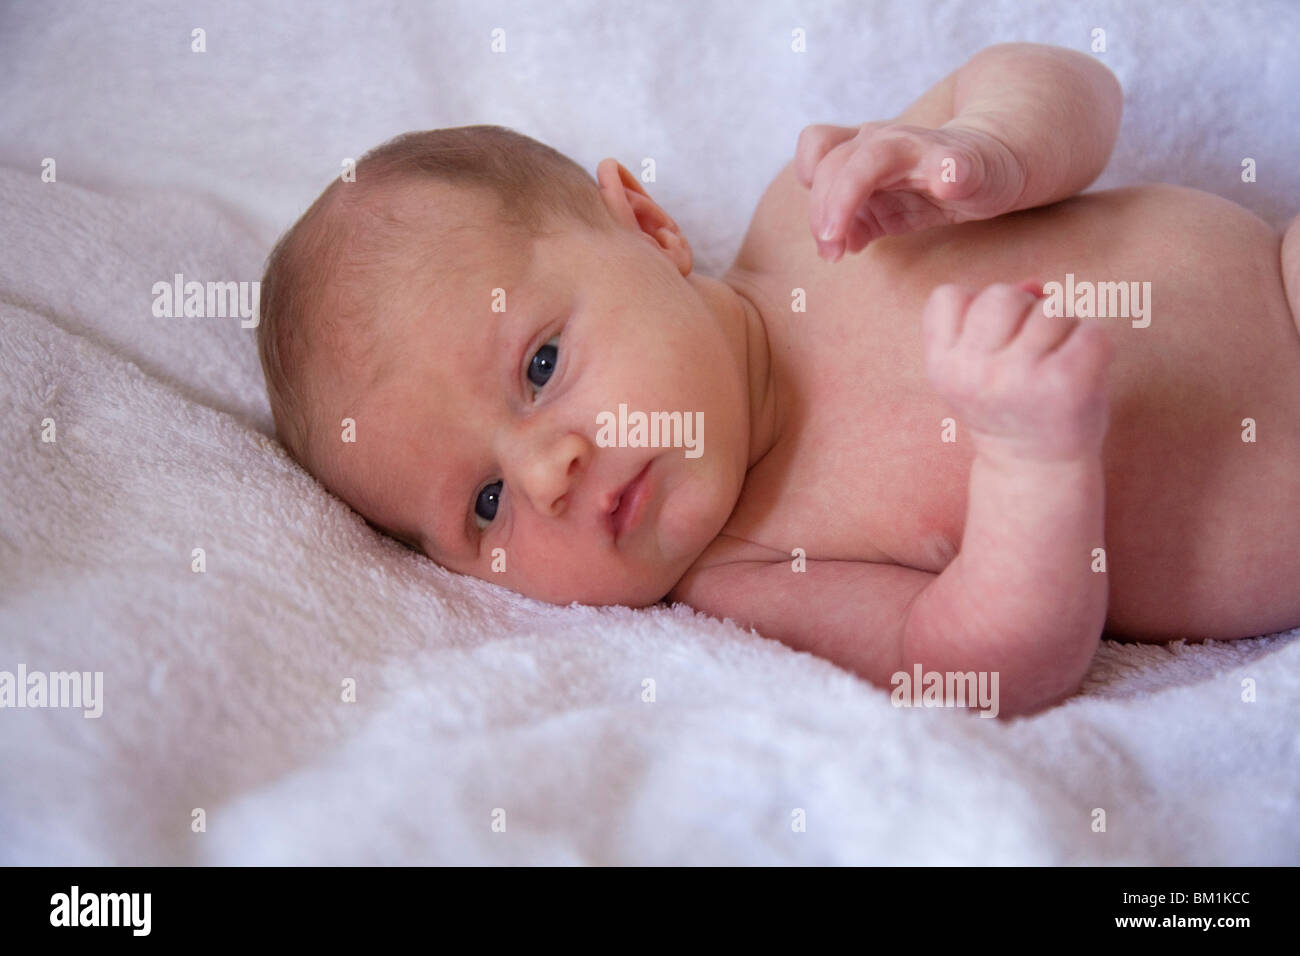 Bebé recién nacido caucásico inglés hembra blanca niña hermosa neonato Foto de stock